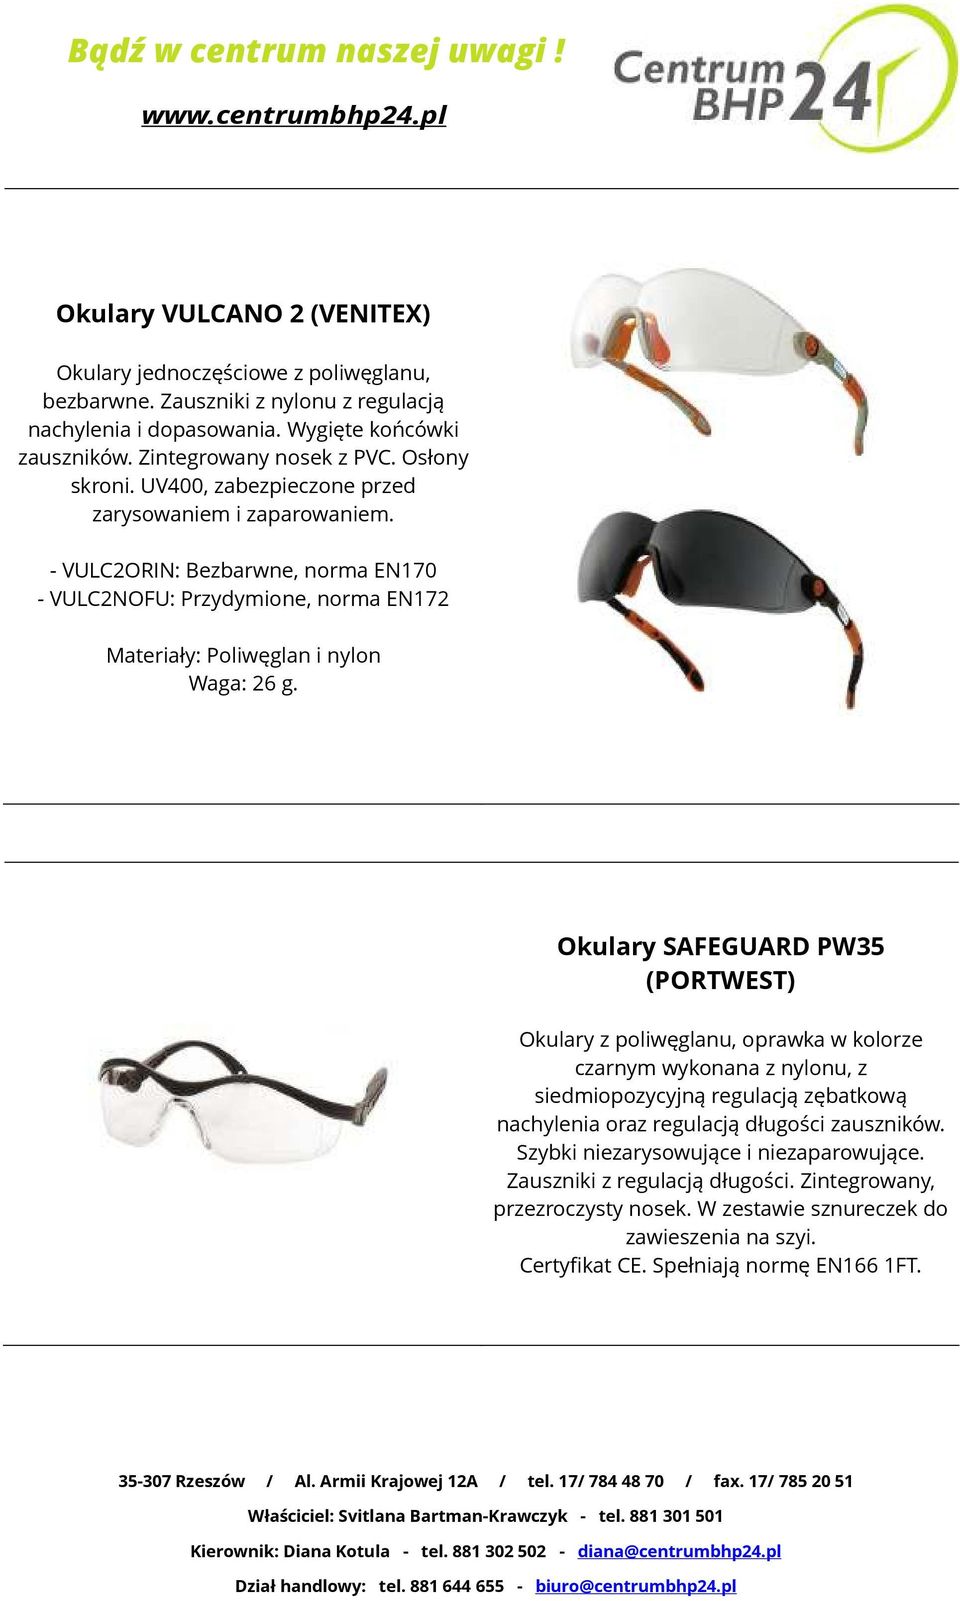 Okulary SAFEGUARD PW35 (PORTWEST) Okulary z poliwęglanu, oprawka w kolorze czarnym wykonana z nylonu, z siedmiopozycyjną regulacją zębatkową nachylenia oraz regulacją długości zauszników.